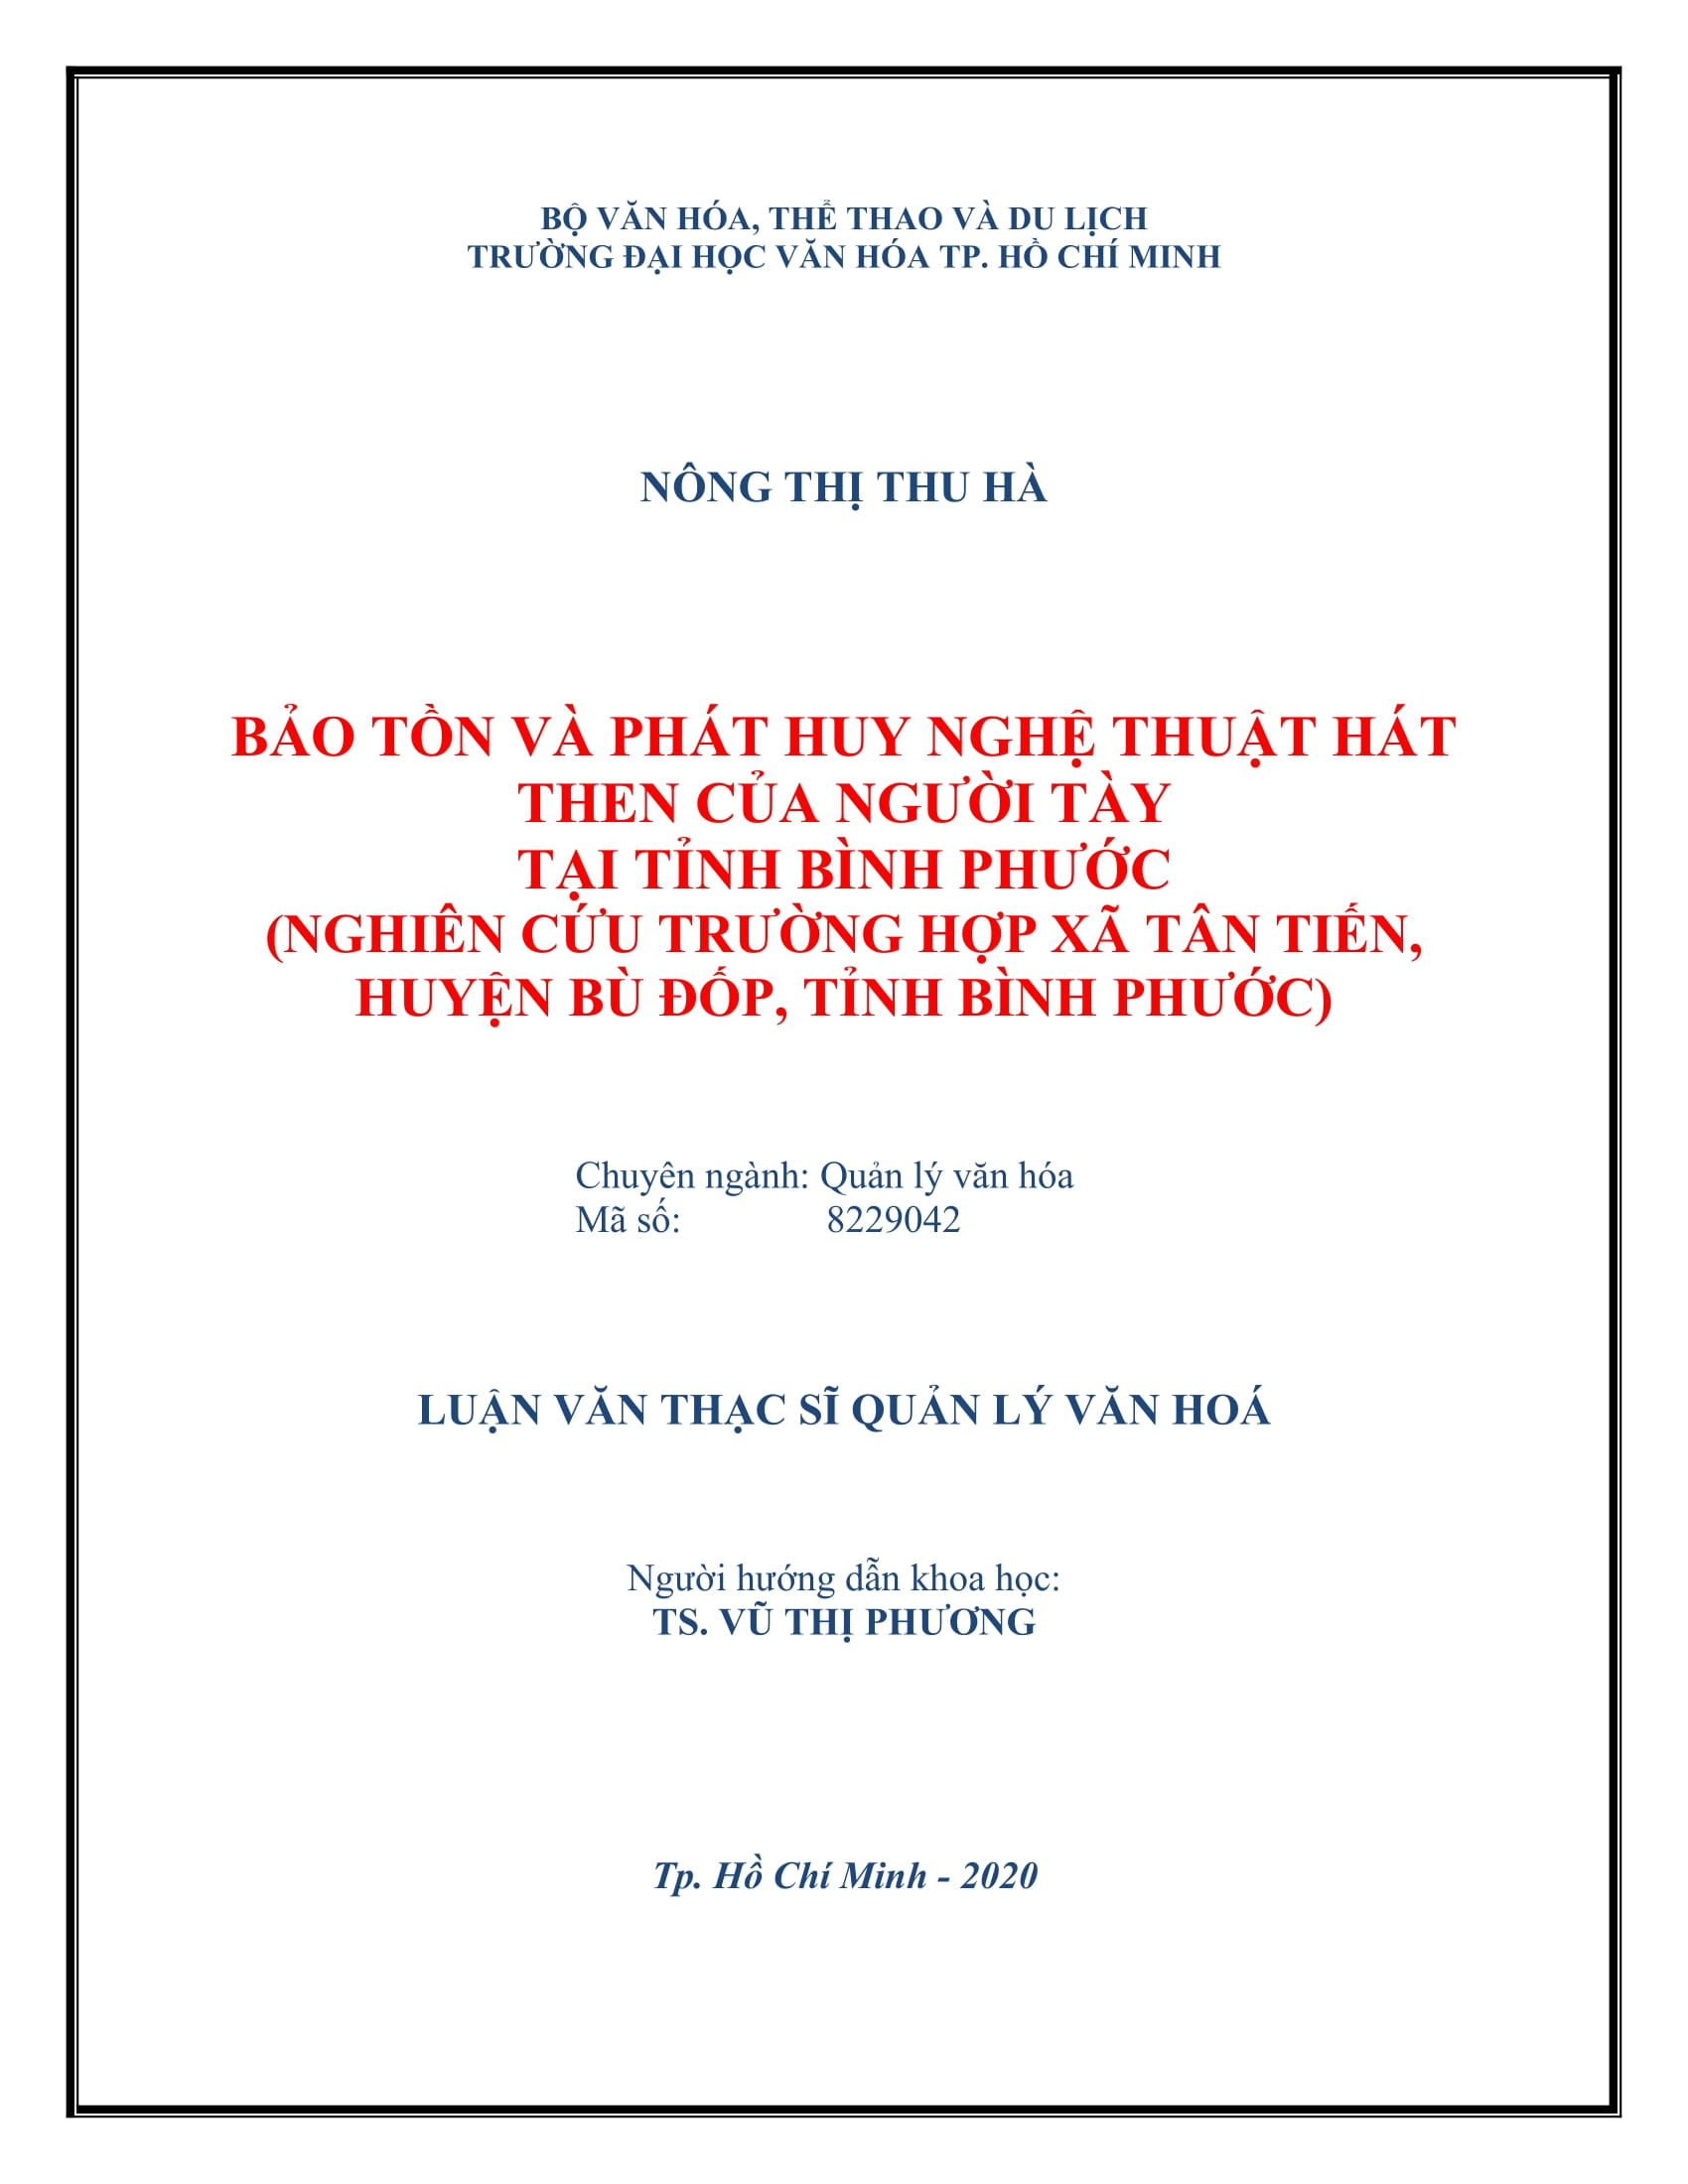 Bảo tồn và phát huy nghệ thuật hát Then của người Tày tại tỉnh Bình Phước (Nghiên cứu trường hợp Xã Tân Tiến, Huyện Bù Đốp, Tỉnh Bình Phước)